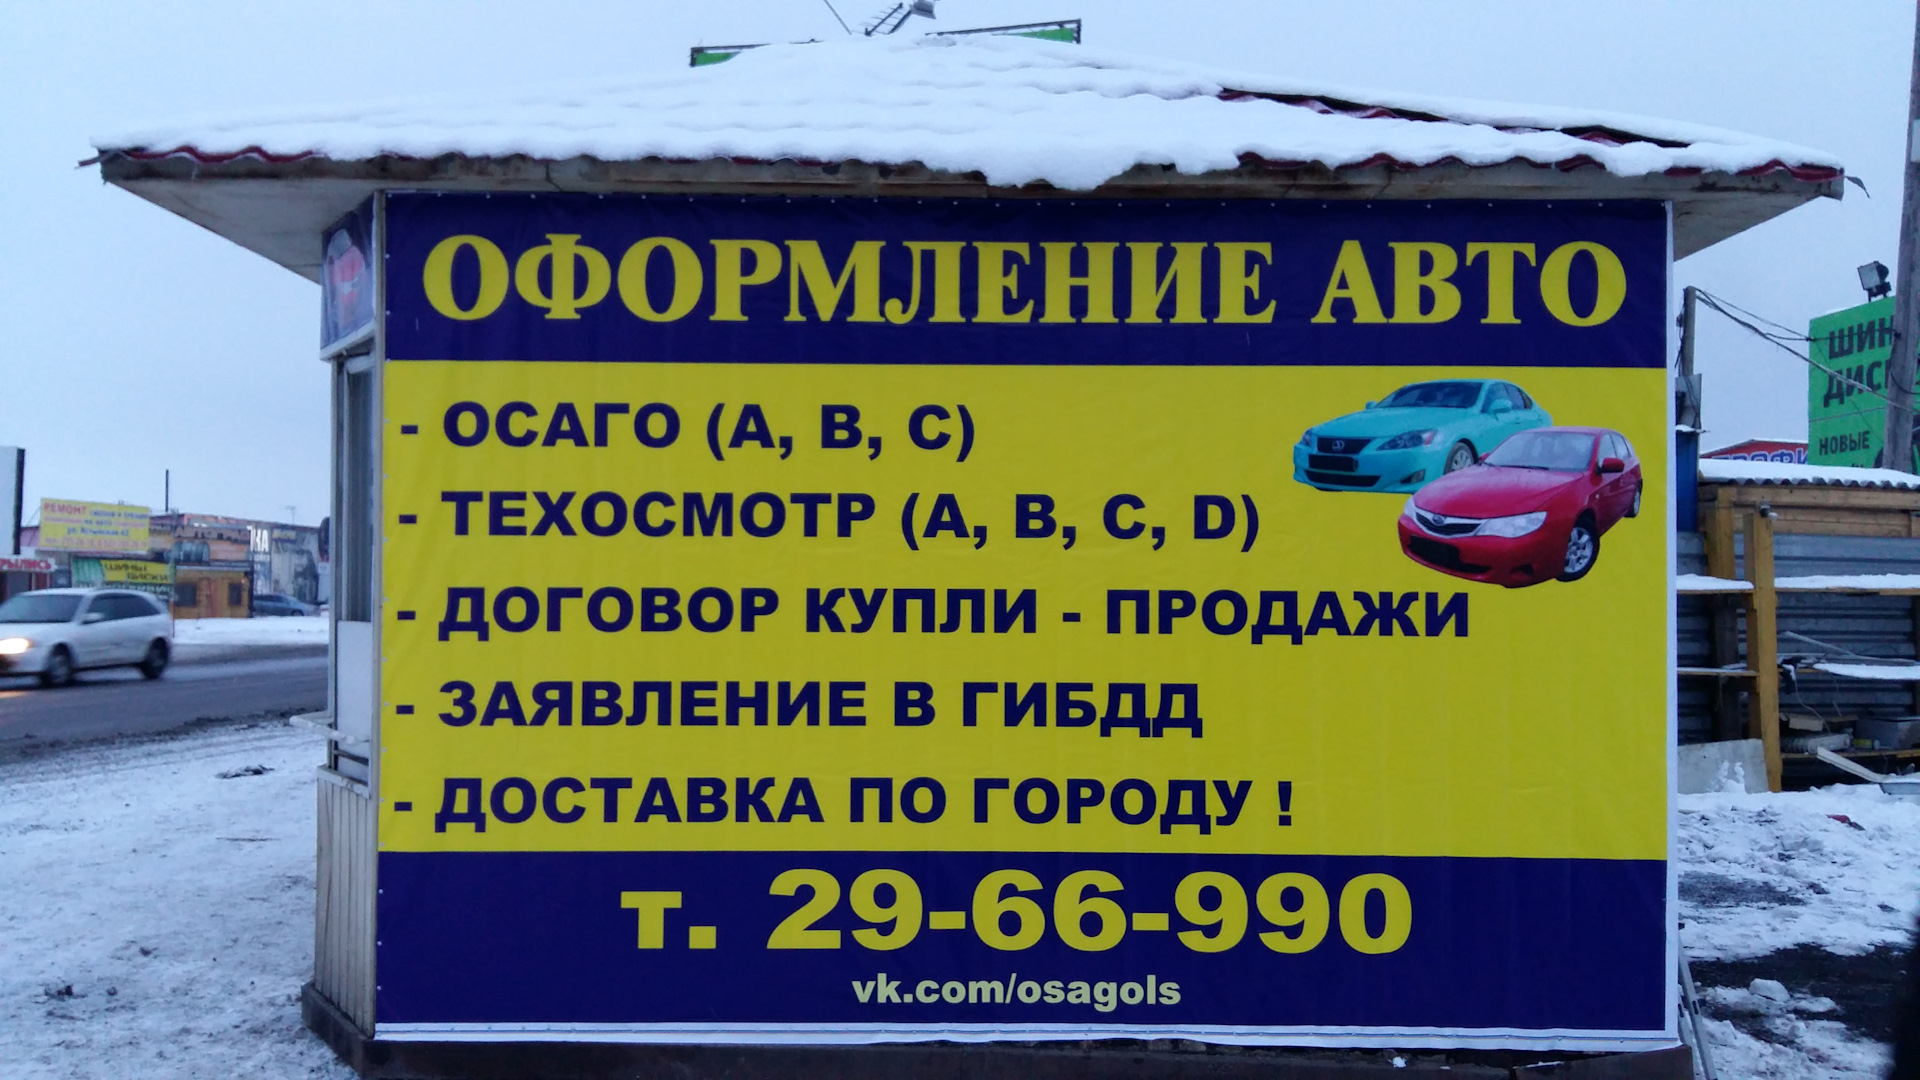 Технический Осмотр Автомобиля Для Осаго Москва